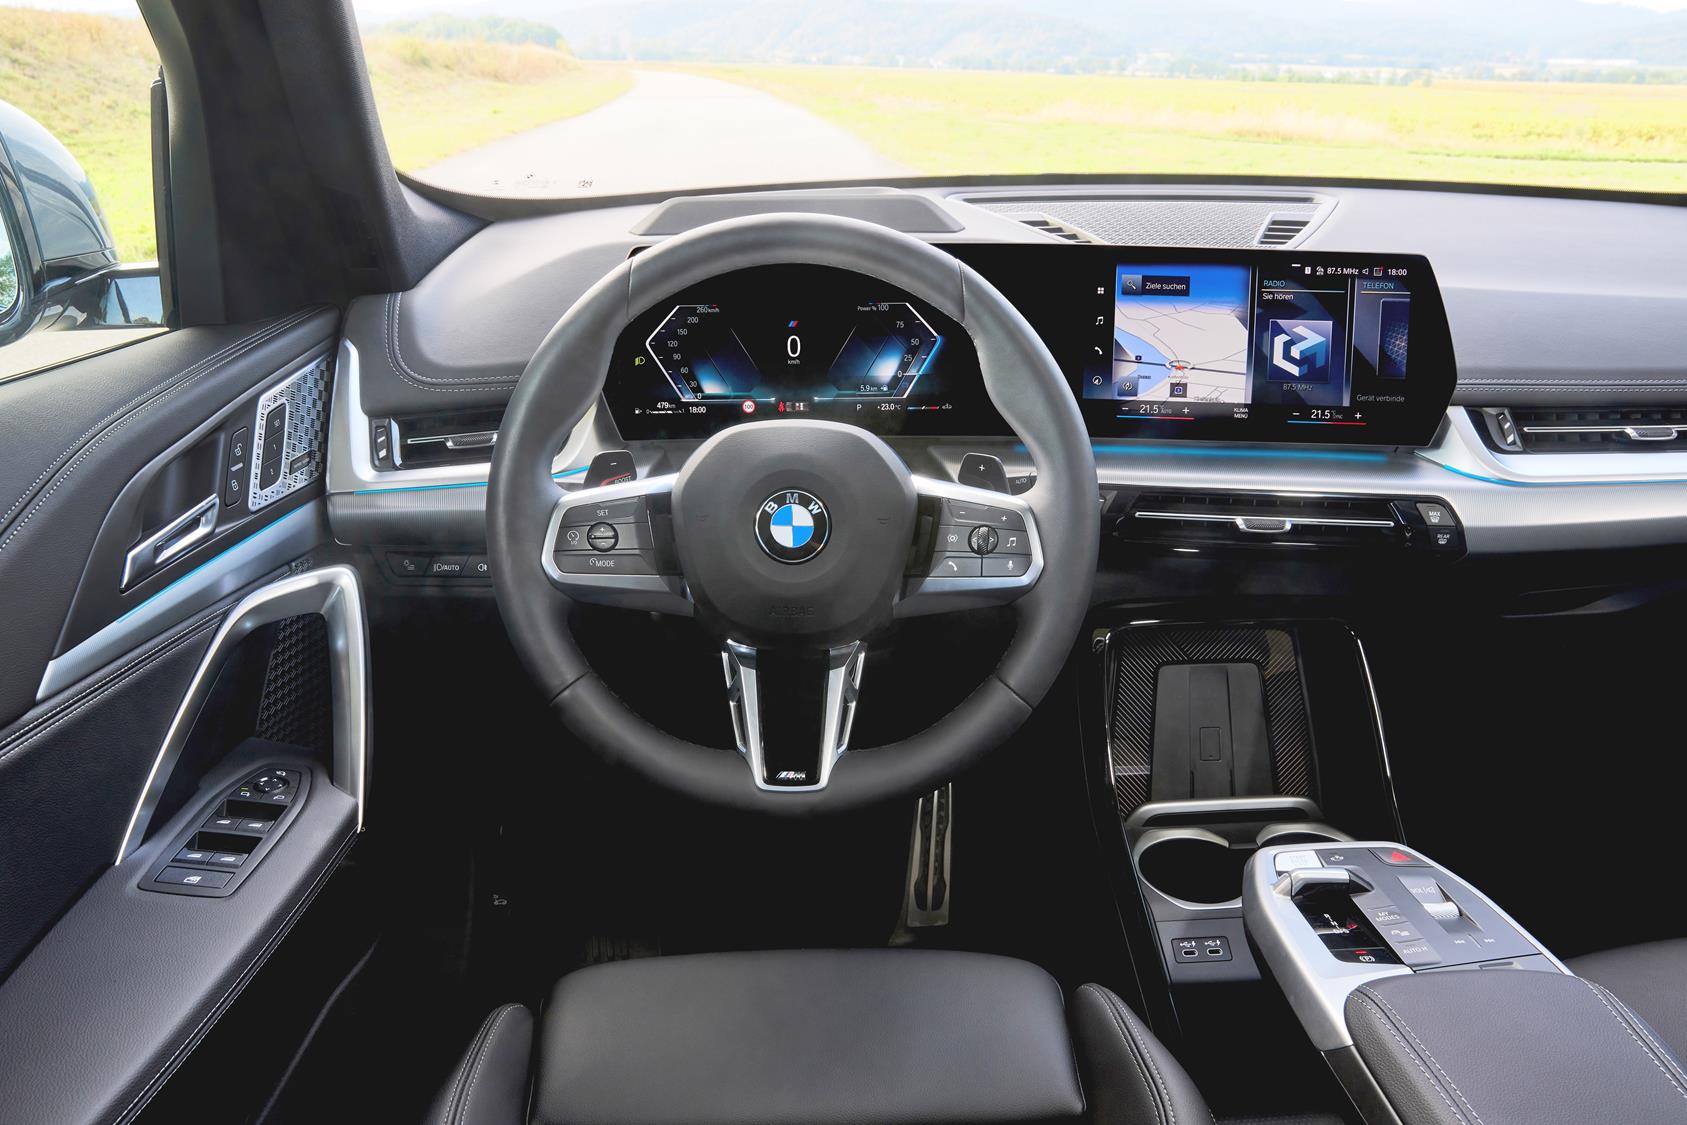 Novo BMW X1 cresce e assume seu lado SUV, veja os preços e versões